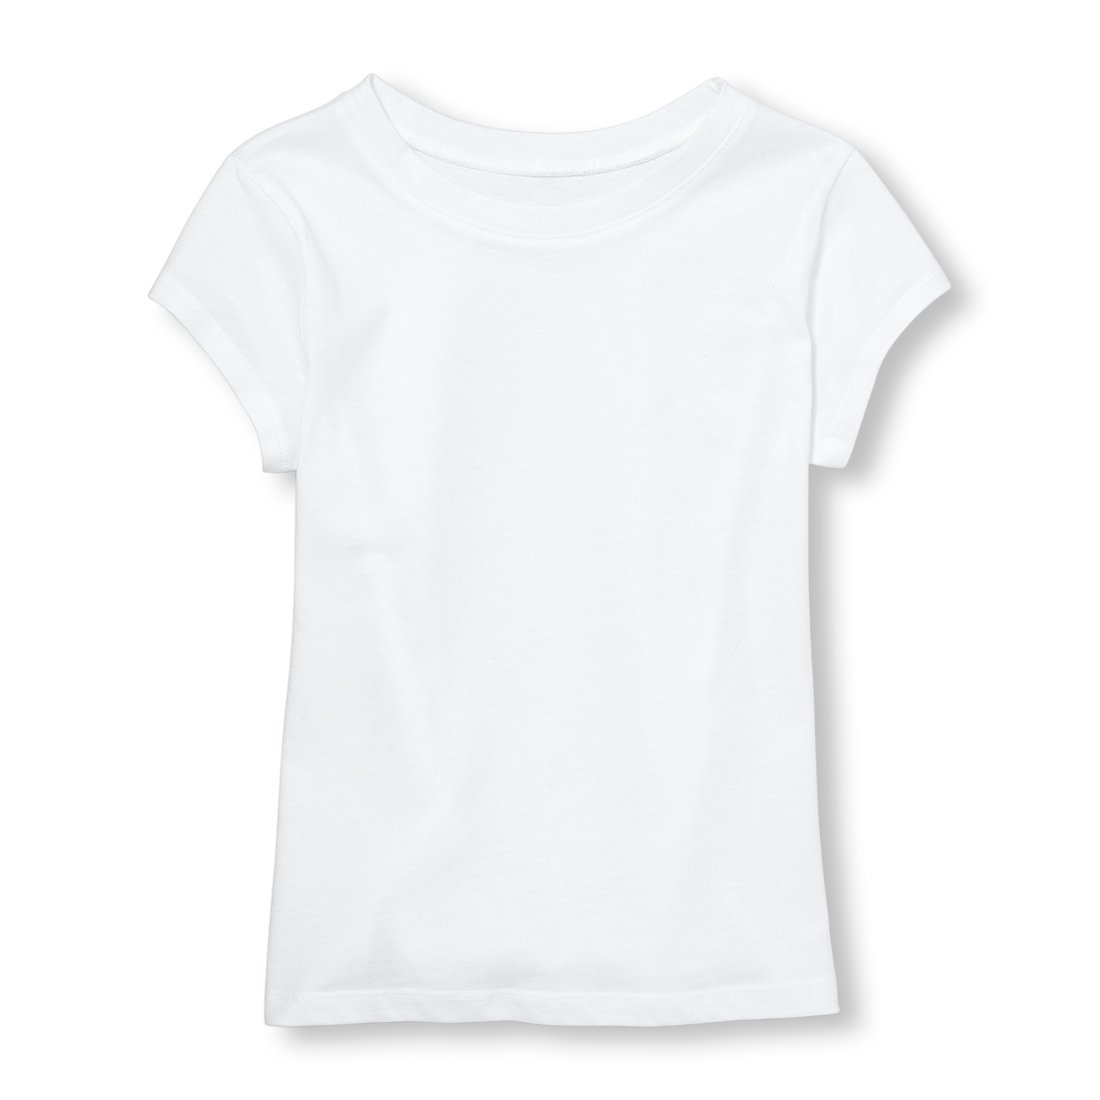 The Children's Place Girls' Short Sleeve T-Shirt